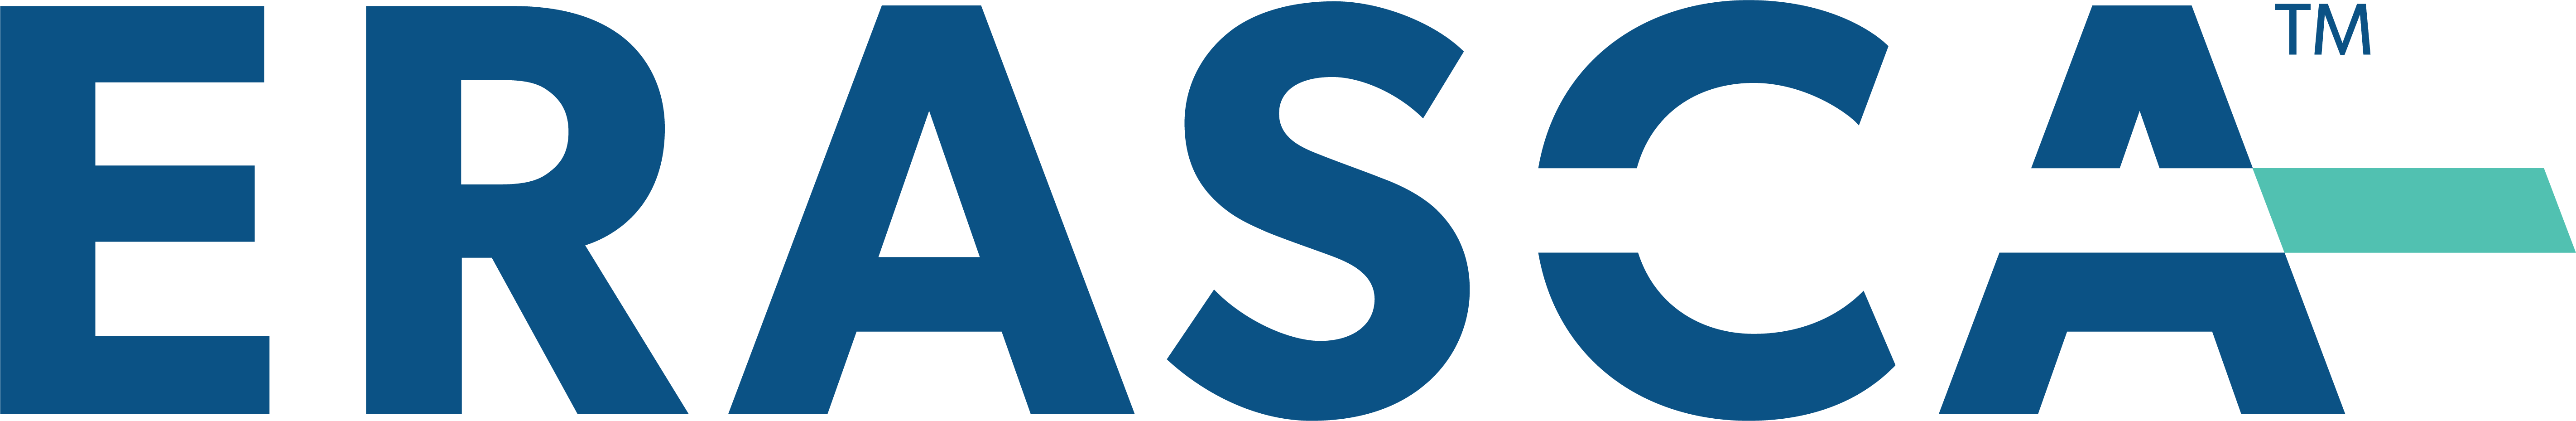 ErascaTM_Logo.png